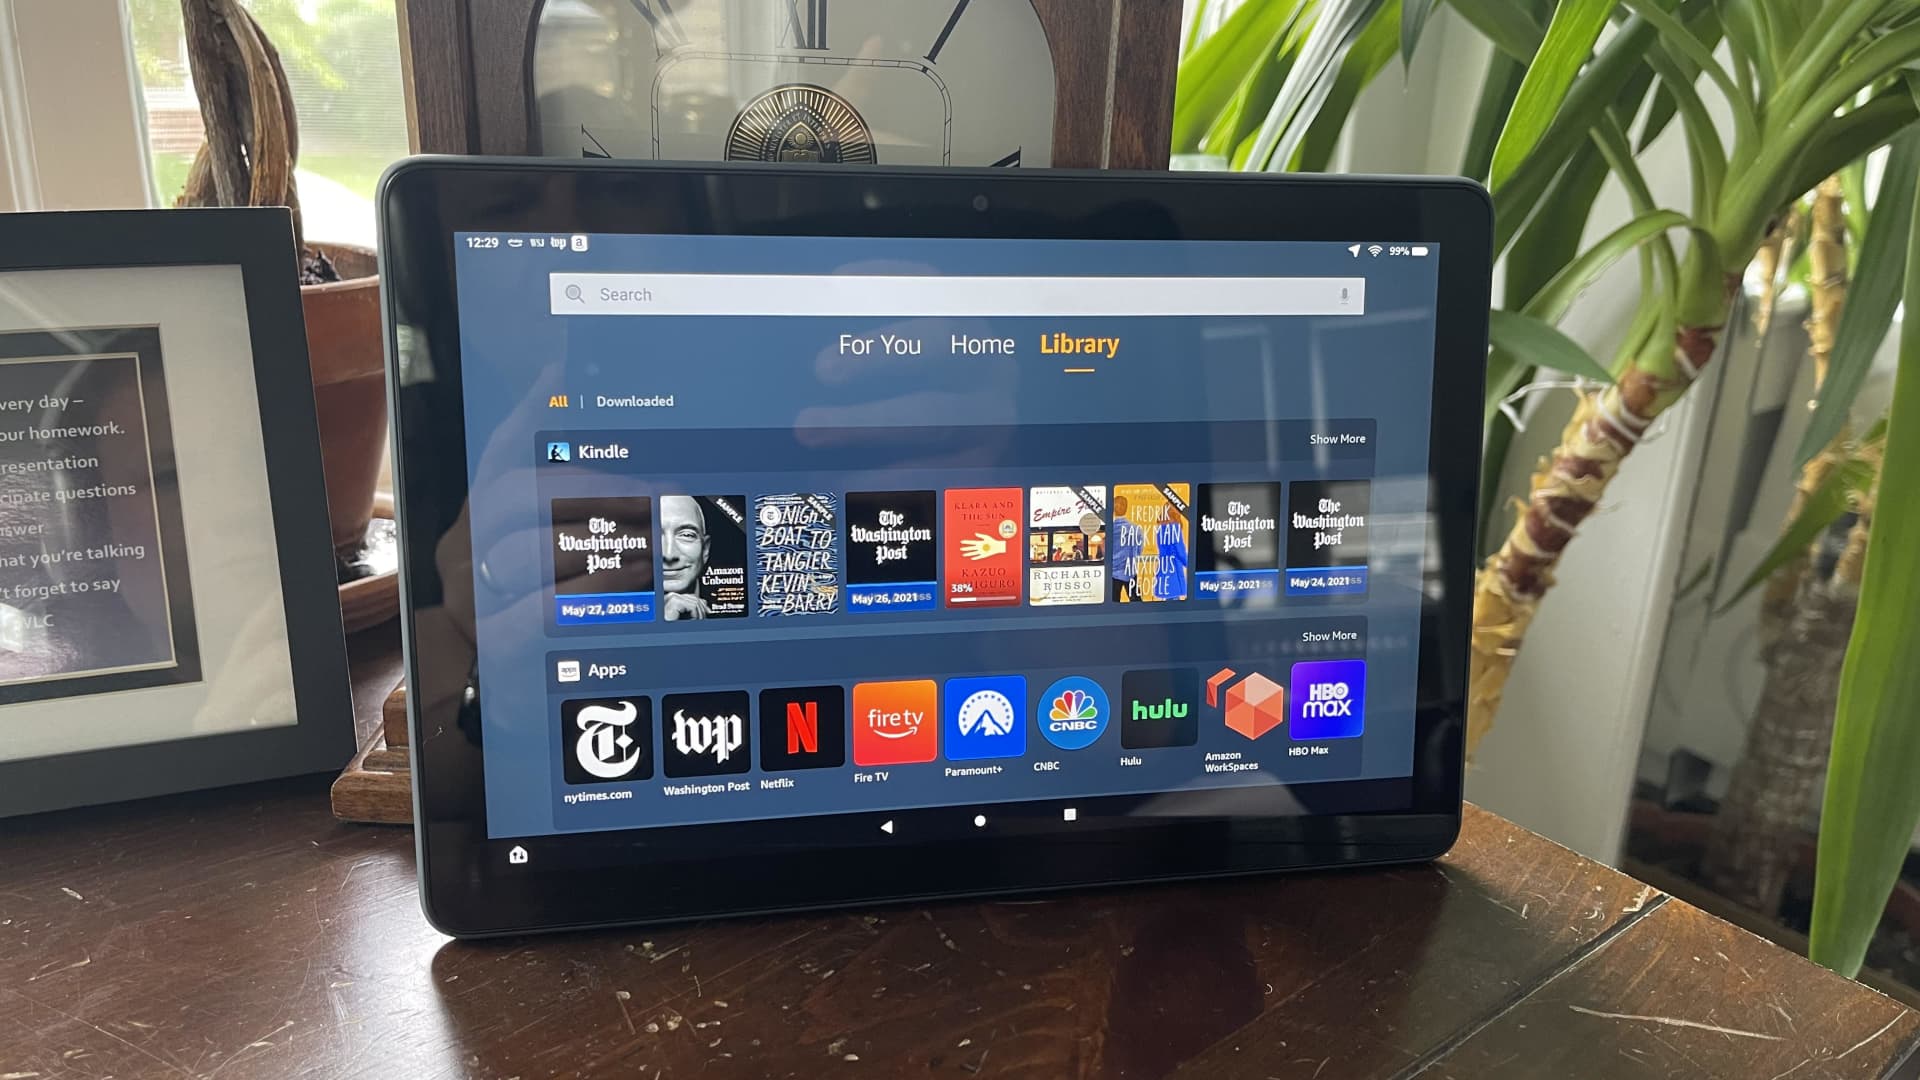 Amazon Fire HD 10 Plus tablet